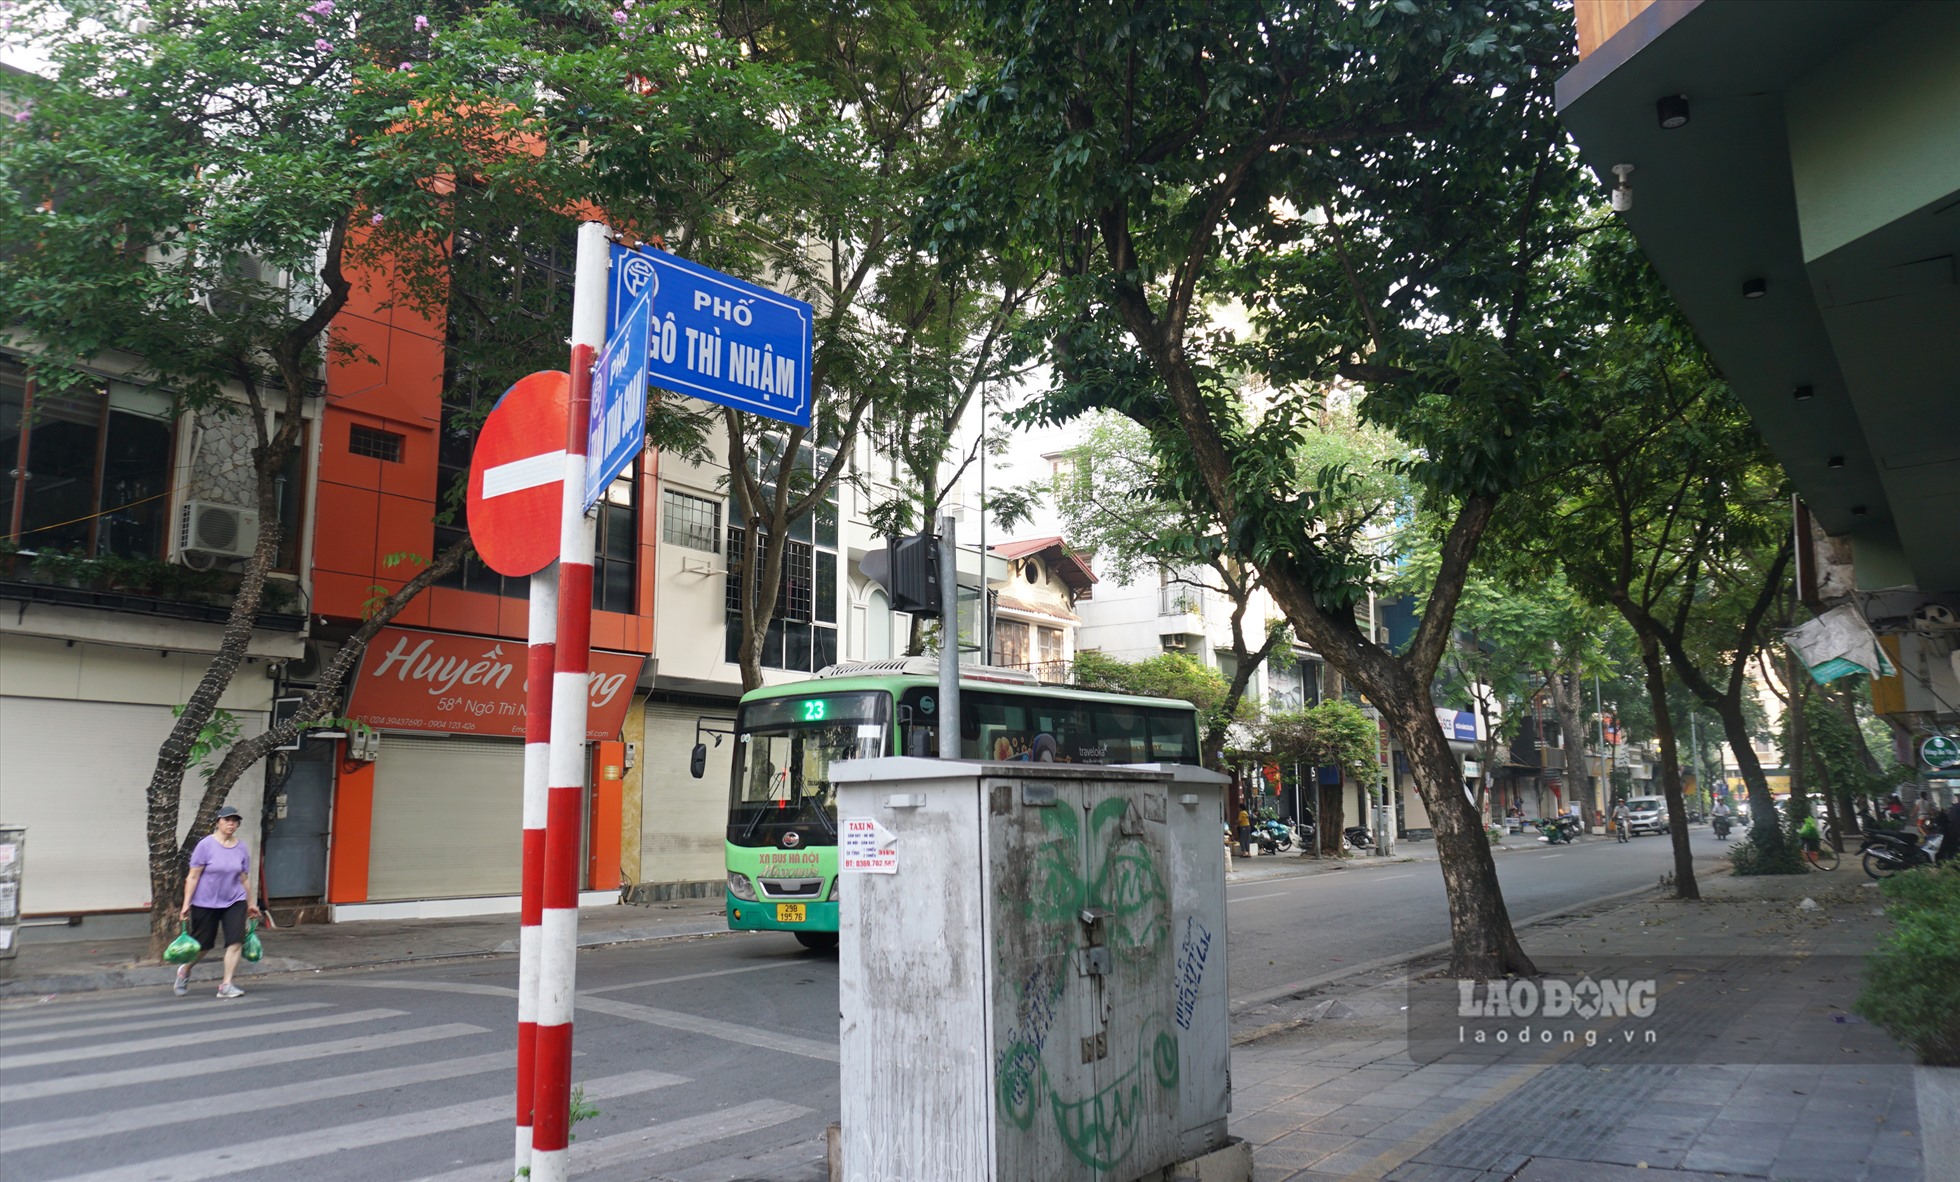 Vỉa hè phố Ngô Thì Nhậm cũng là 1 trong 4 tuyến phố đáp ứng được điều kiện cho thuê để kinh doanh của quận Hai Bà Trưng.